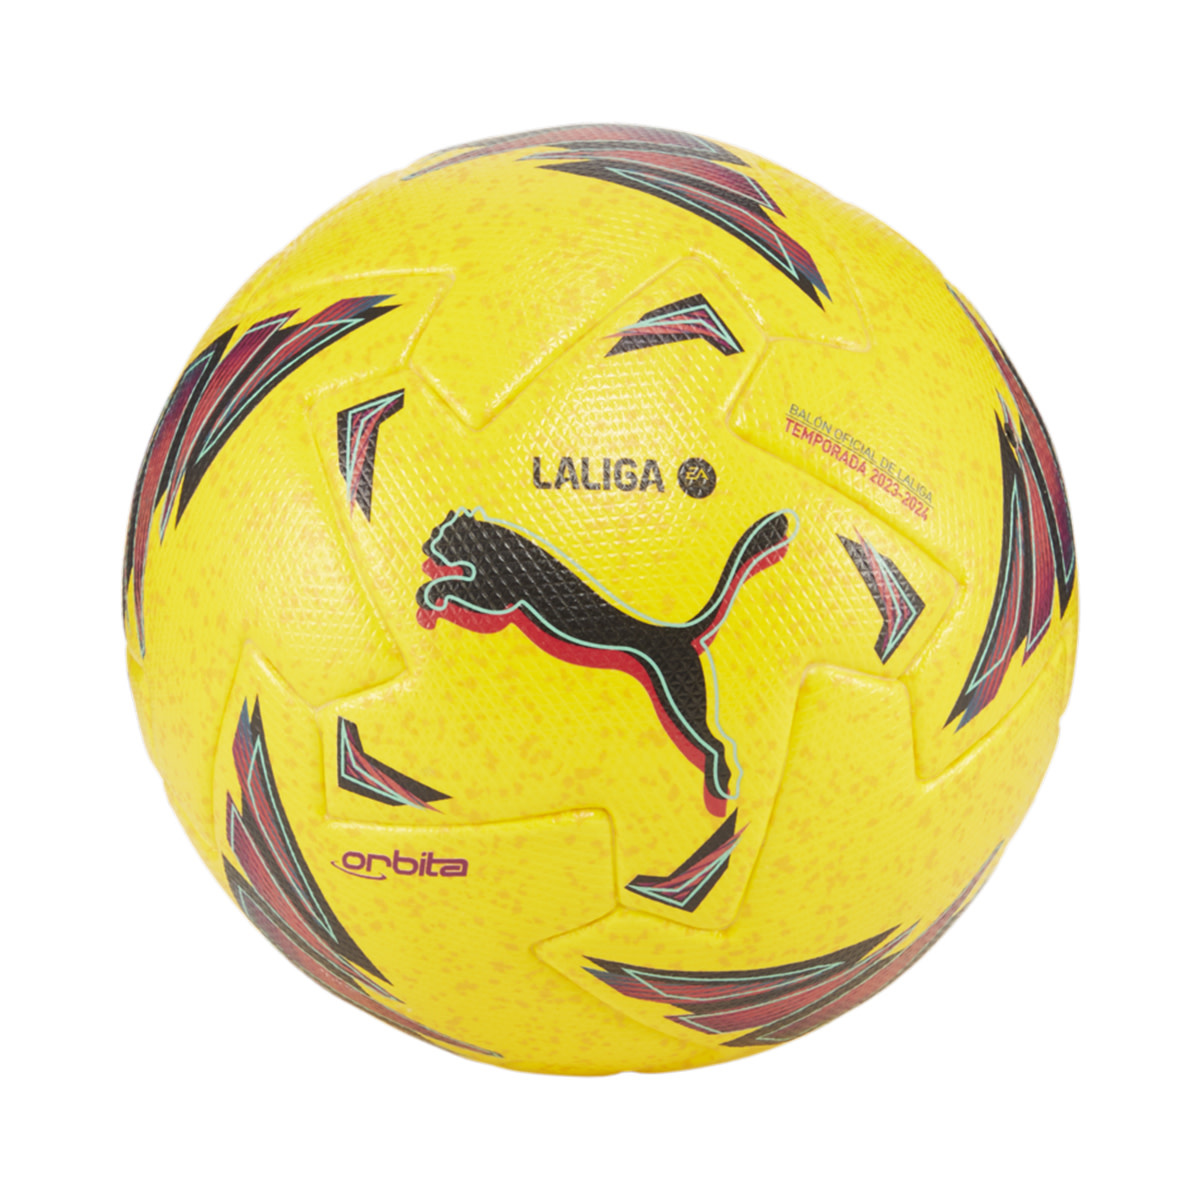 Balón mini fútbol Puma Orbita LaLiga 1 23-24 blanco multicolor